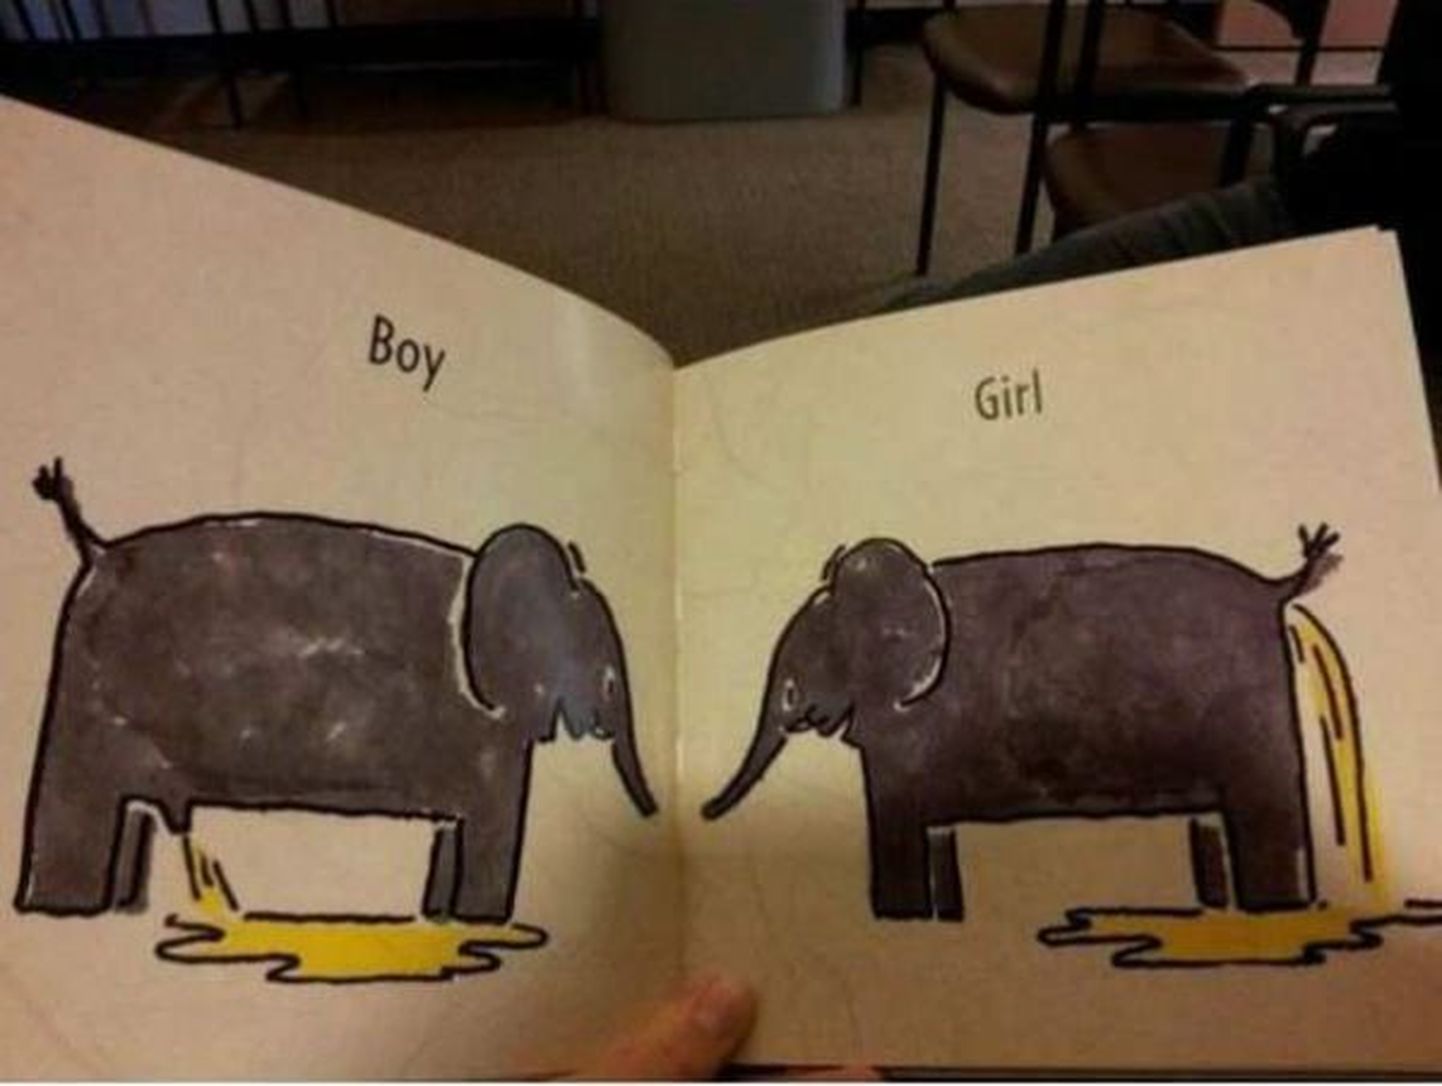 Это, пожалуй, самый доходчивый способ объяснить ребятам различие между мальчиком и девочкой.